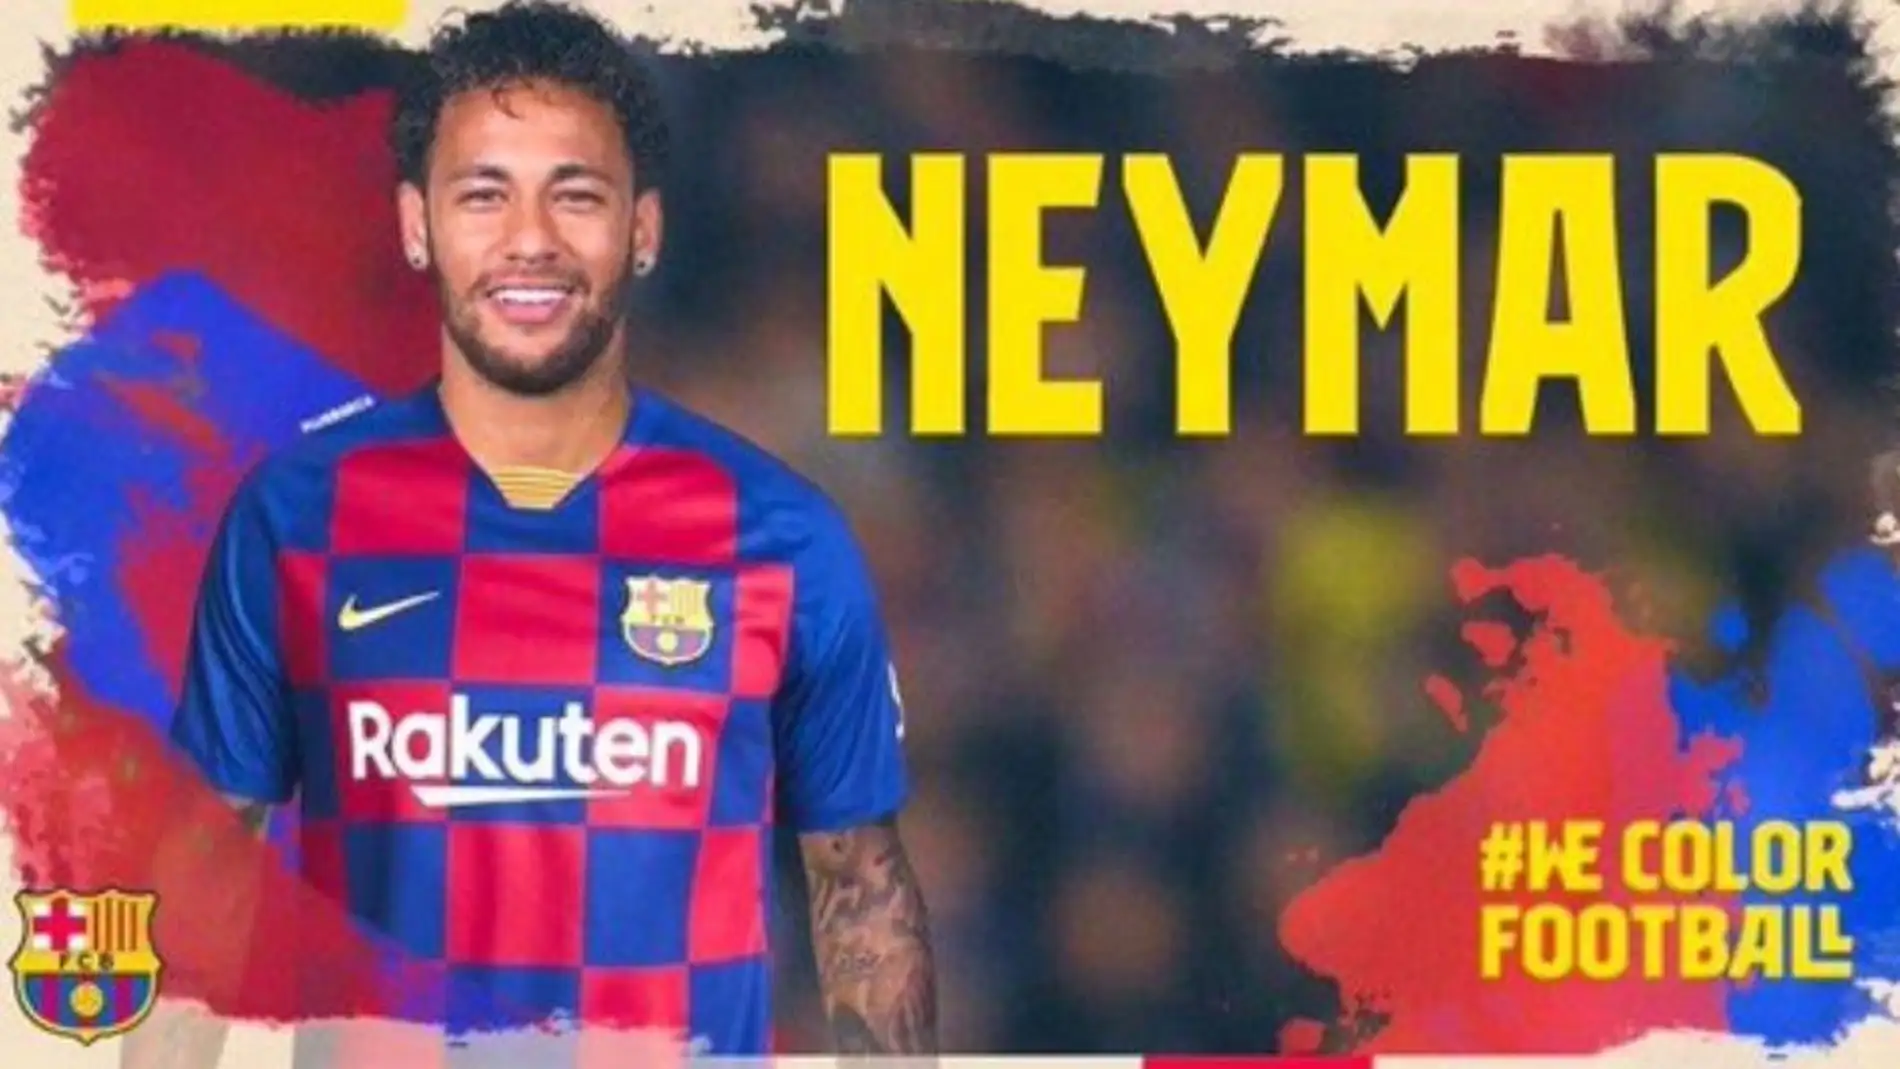 Hackena el Twitter del Barça y anuncian la llegada de Neymar